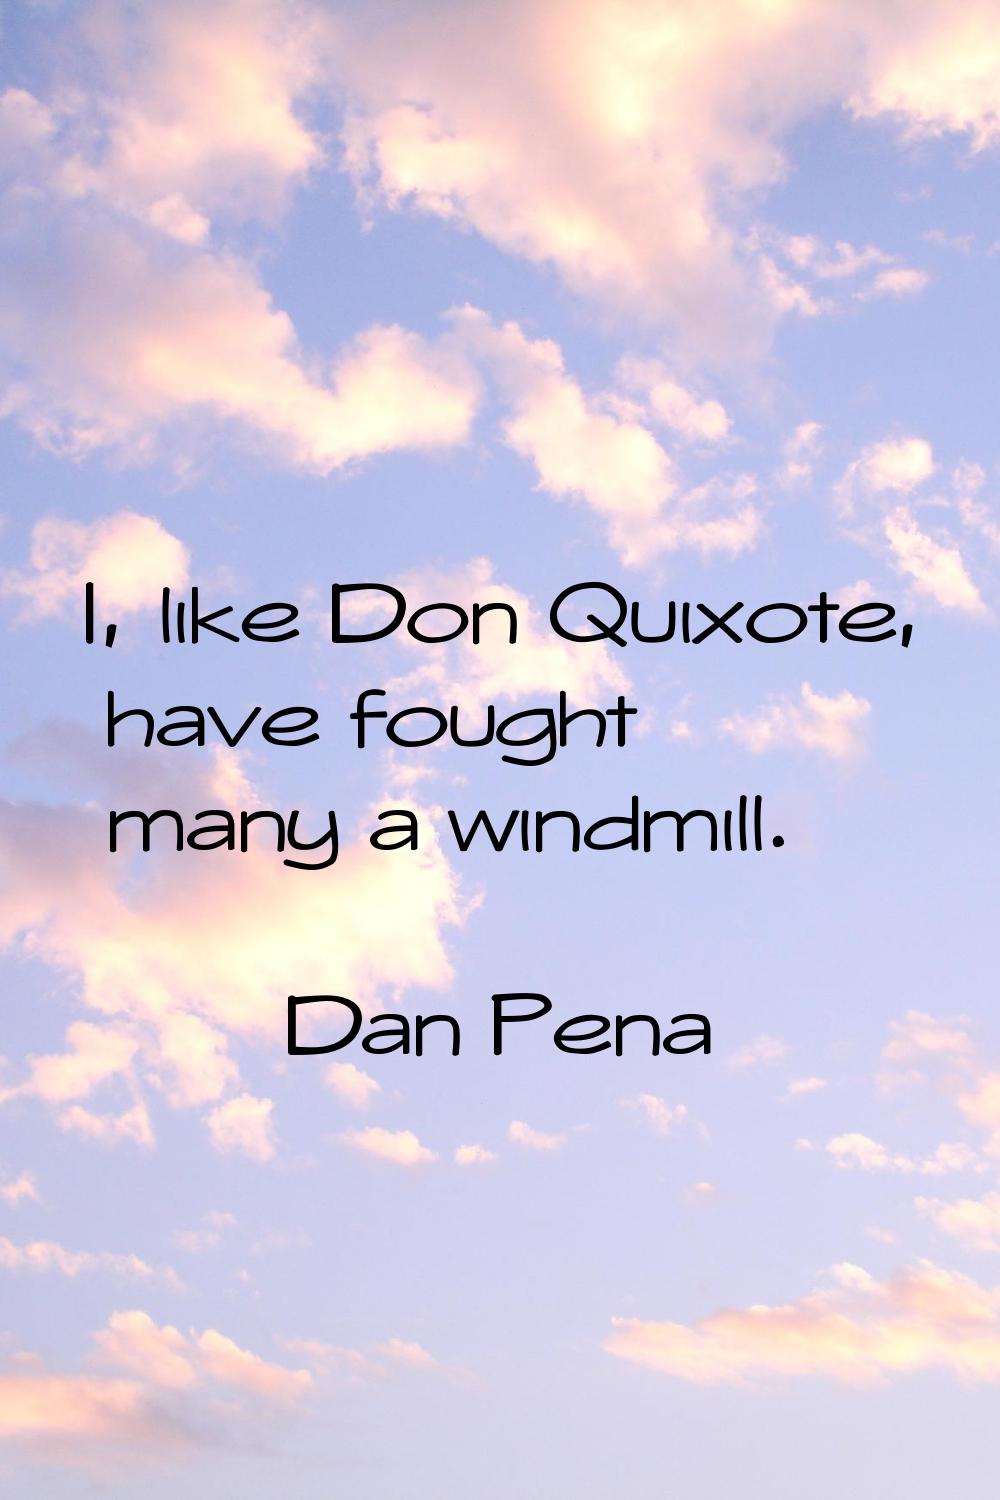 I, like Don Quixote, have fought many a windmill.